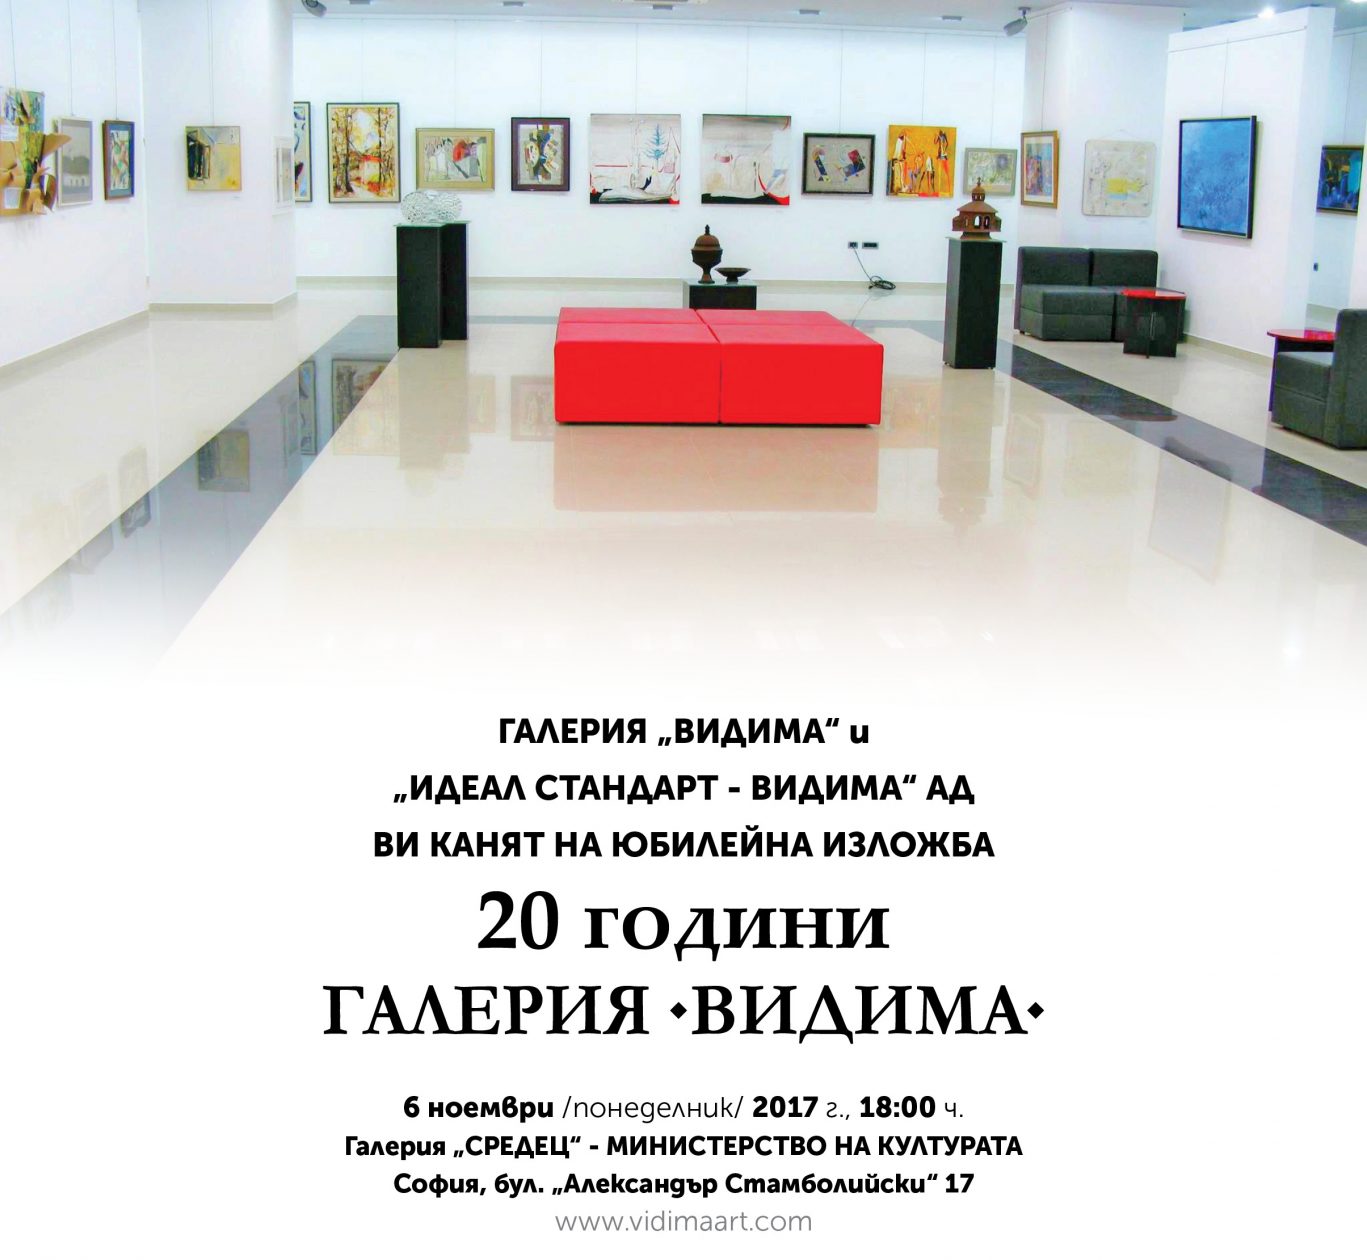 Галерия „Видима“ представя над 40 творби на изявени български творци [1/1]